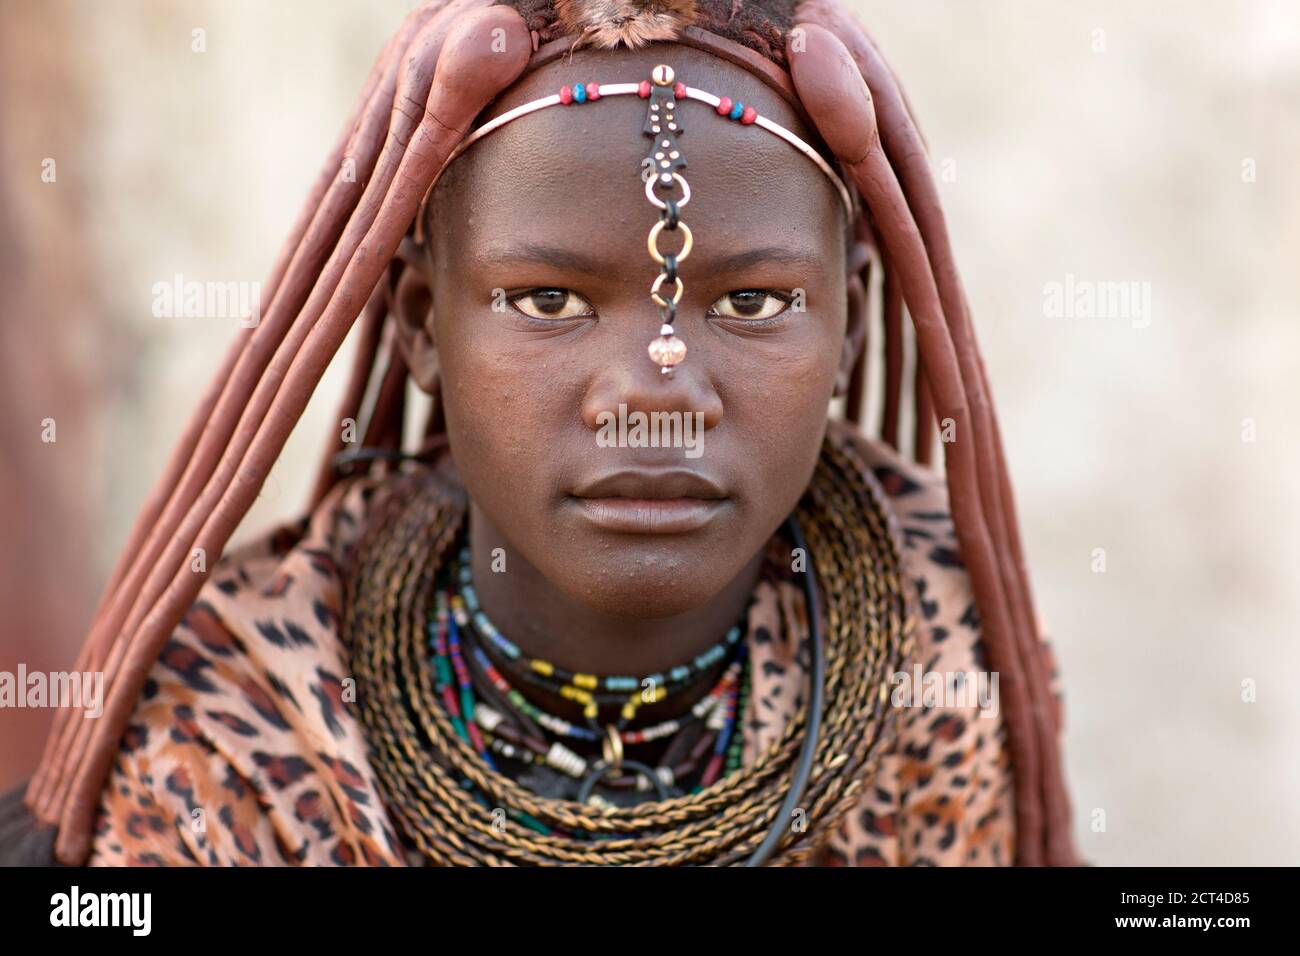 Un portrait en gros plan d'une femme Himba dans le nord de la Namibie. Banque D'Images